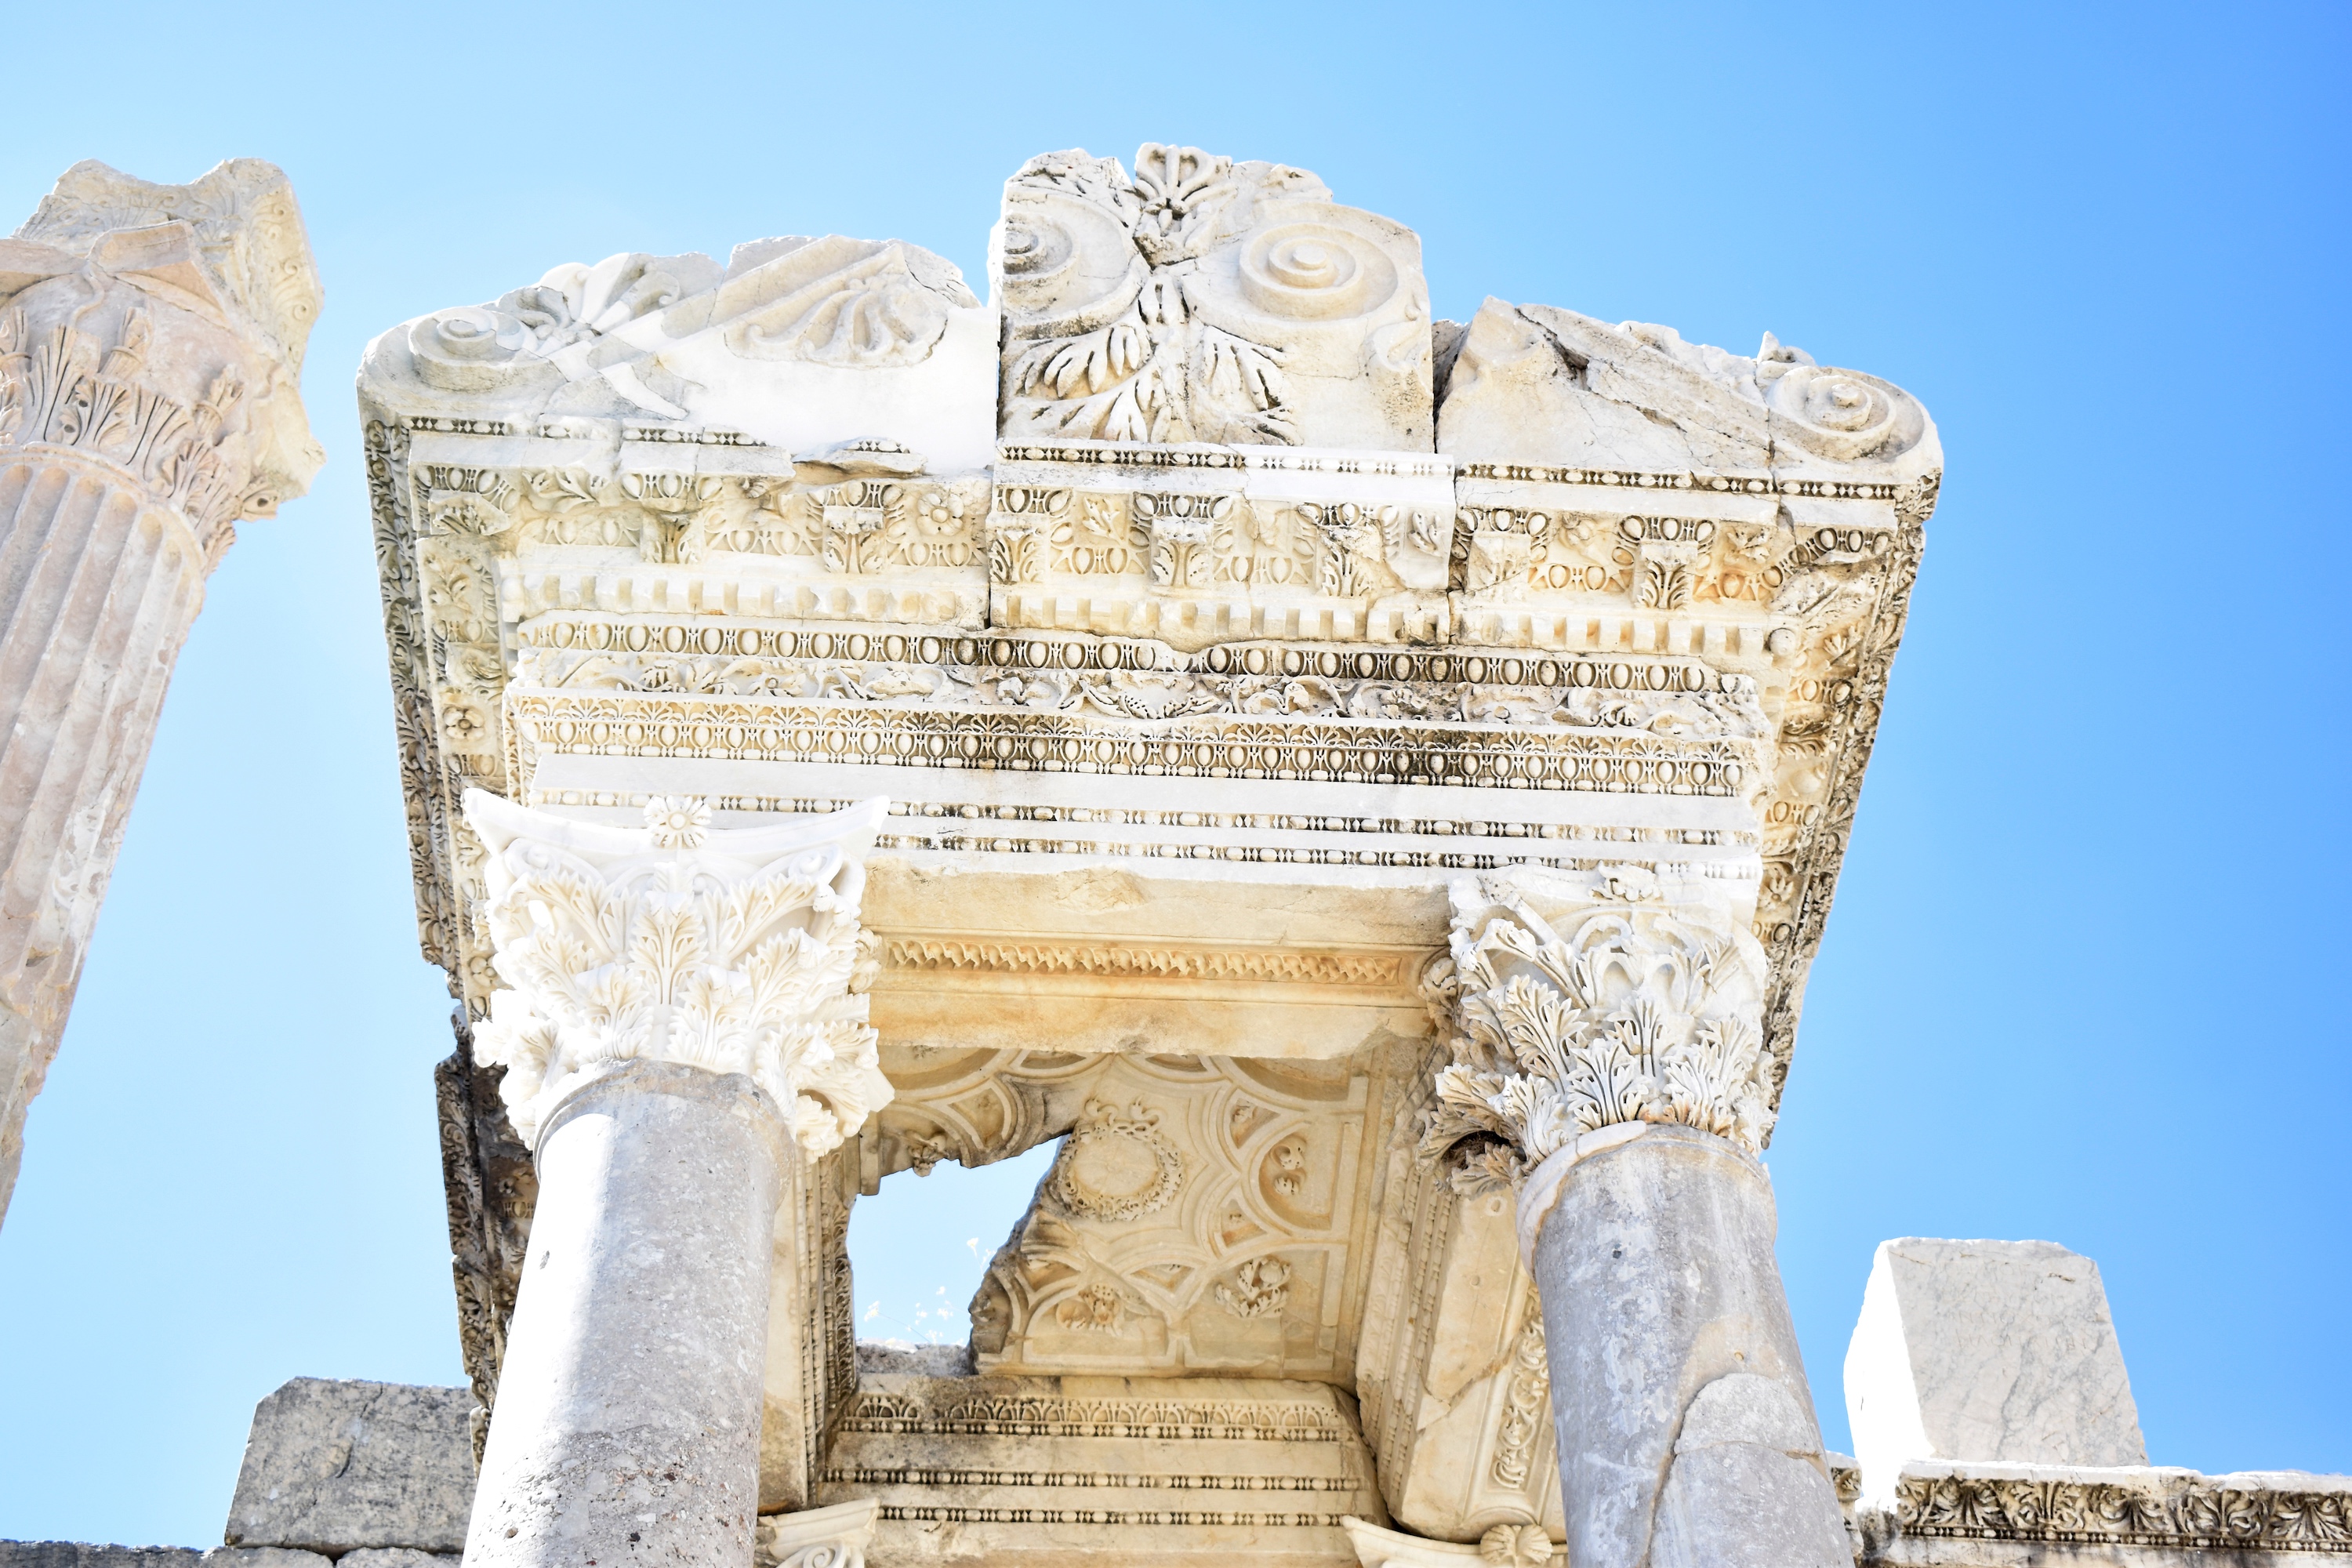 Élément d'architecture dans l’ancienne ville antique de Sagalassos, site archéologique important en Turquie. © Gulnaz, Adobe Stock